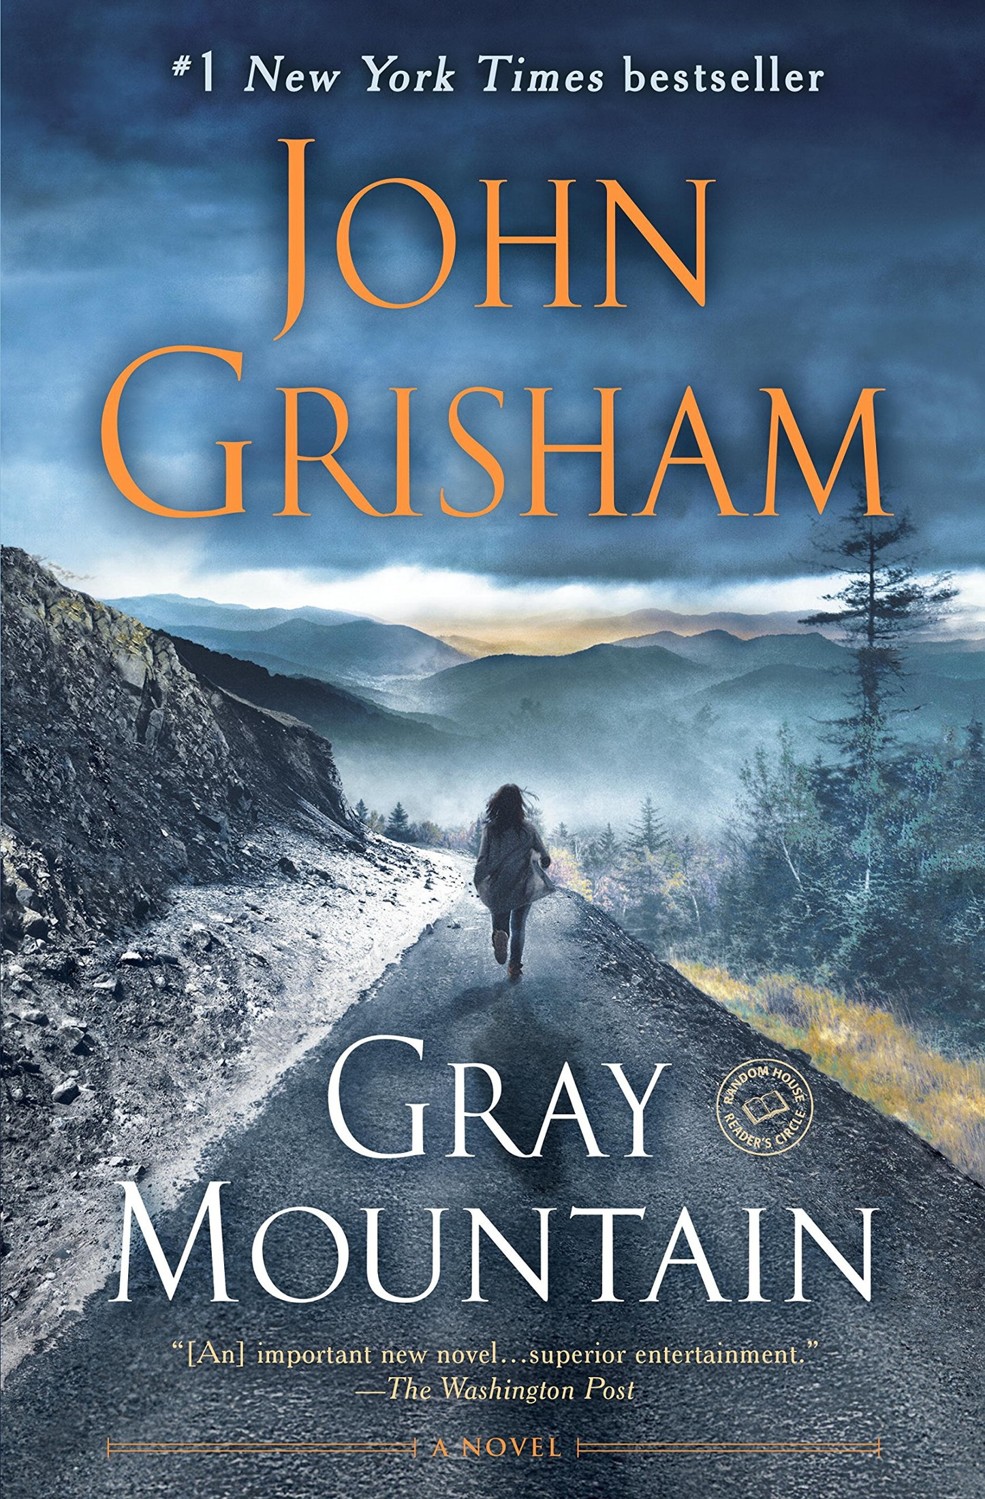 Gray Mountain: A Novel